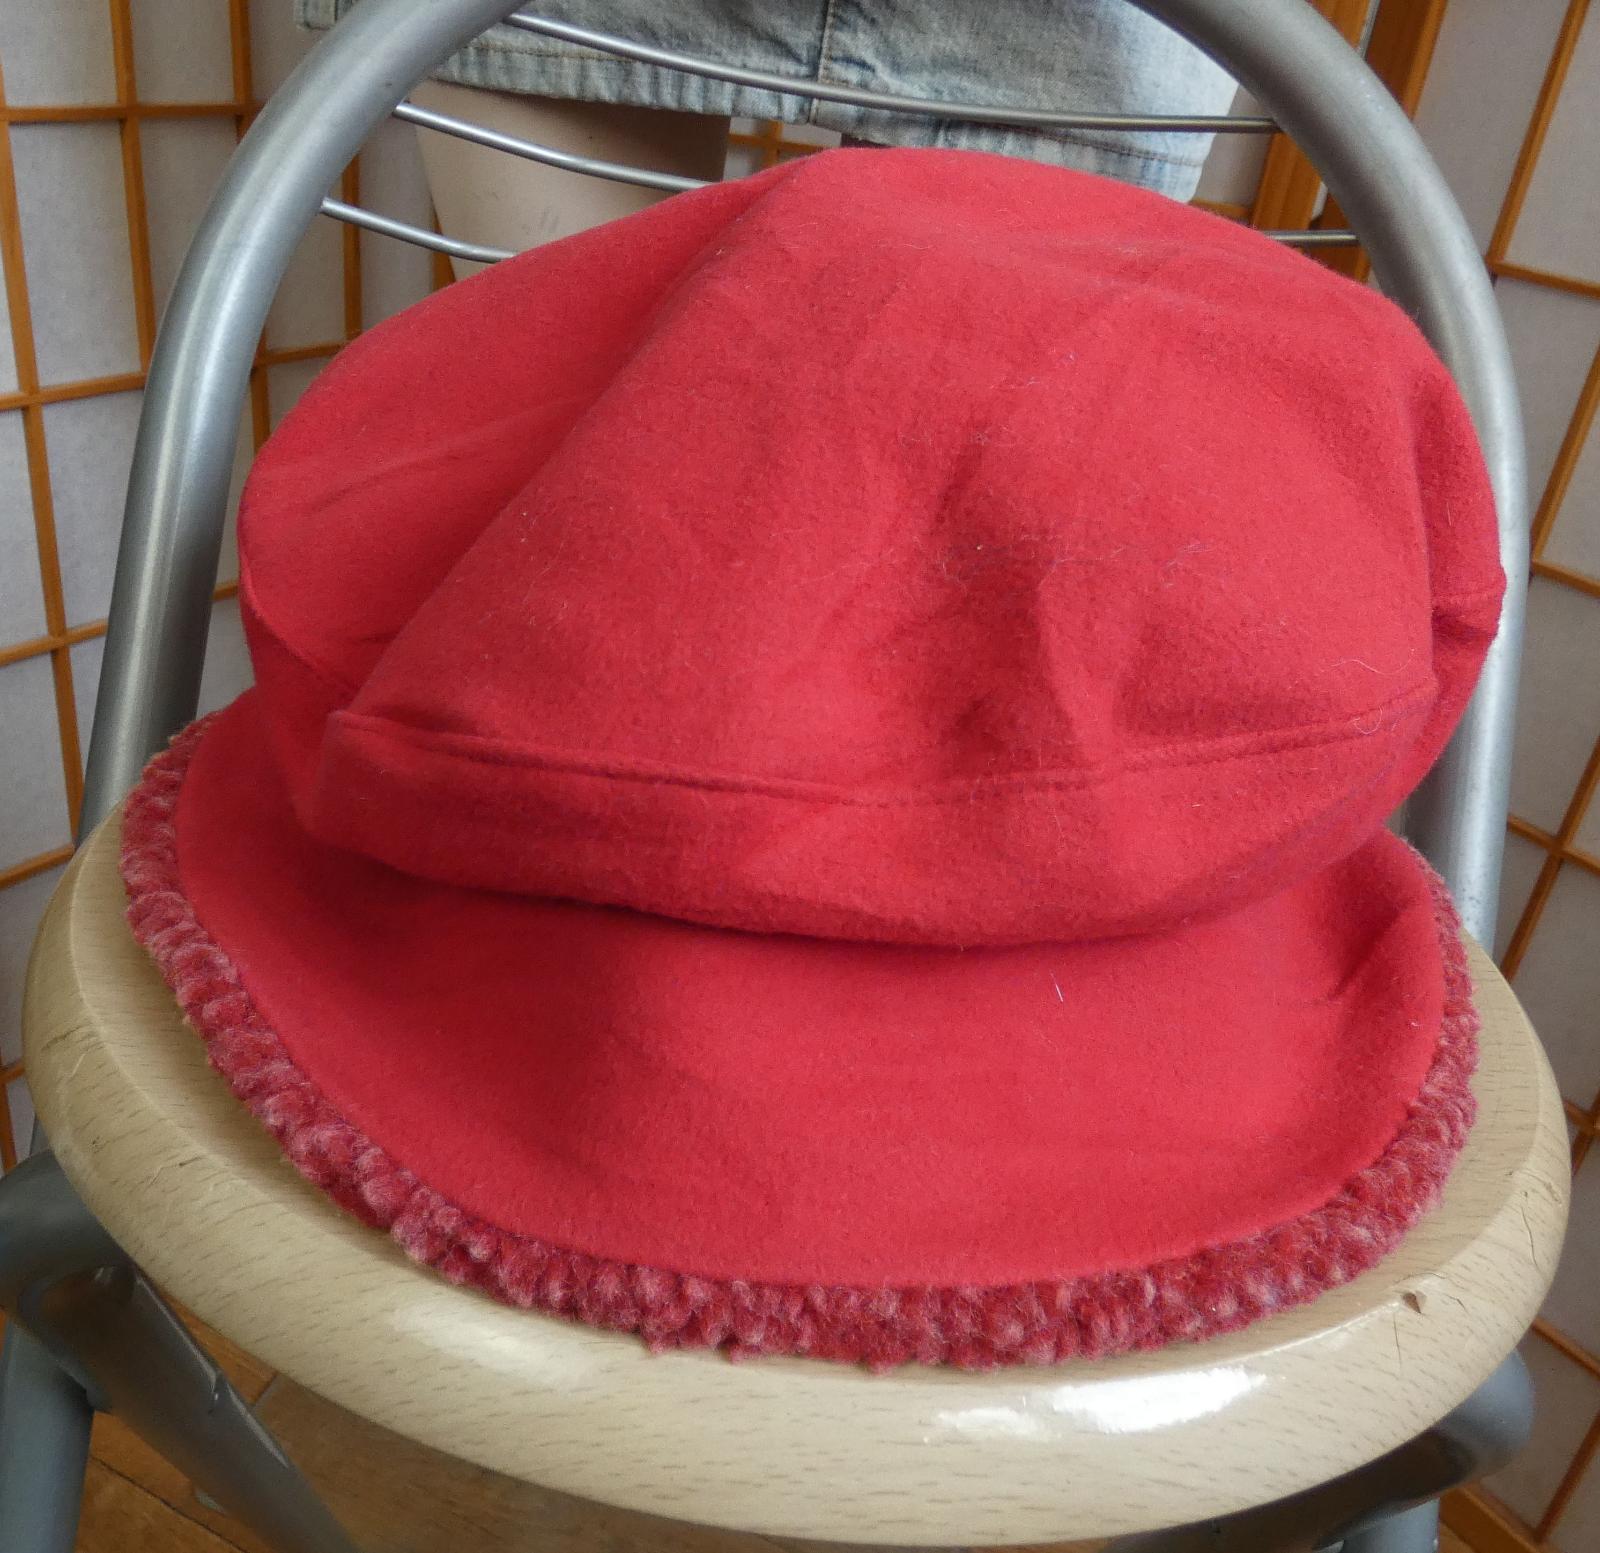 Dámska červená flísová čiapka ELAINE FRAME SCOTLAND 55cm/L ako nová - Módne doplnky